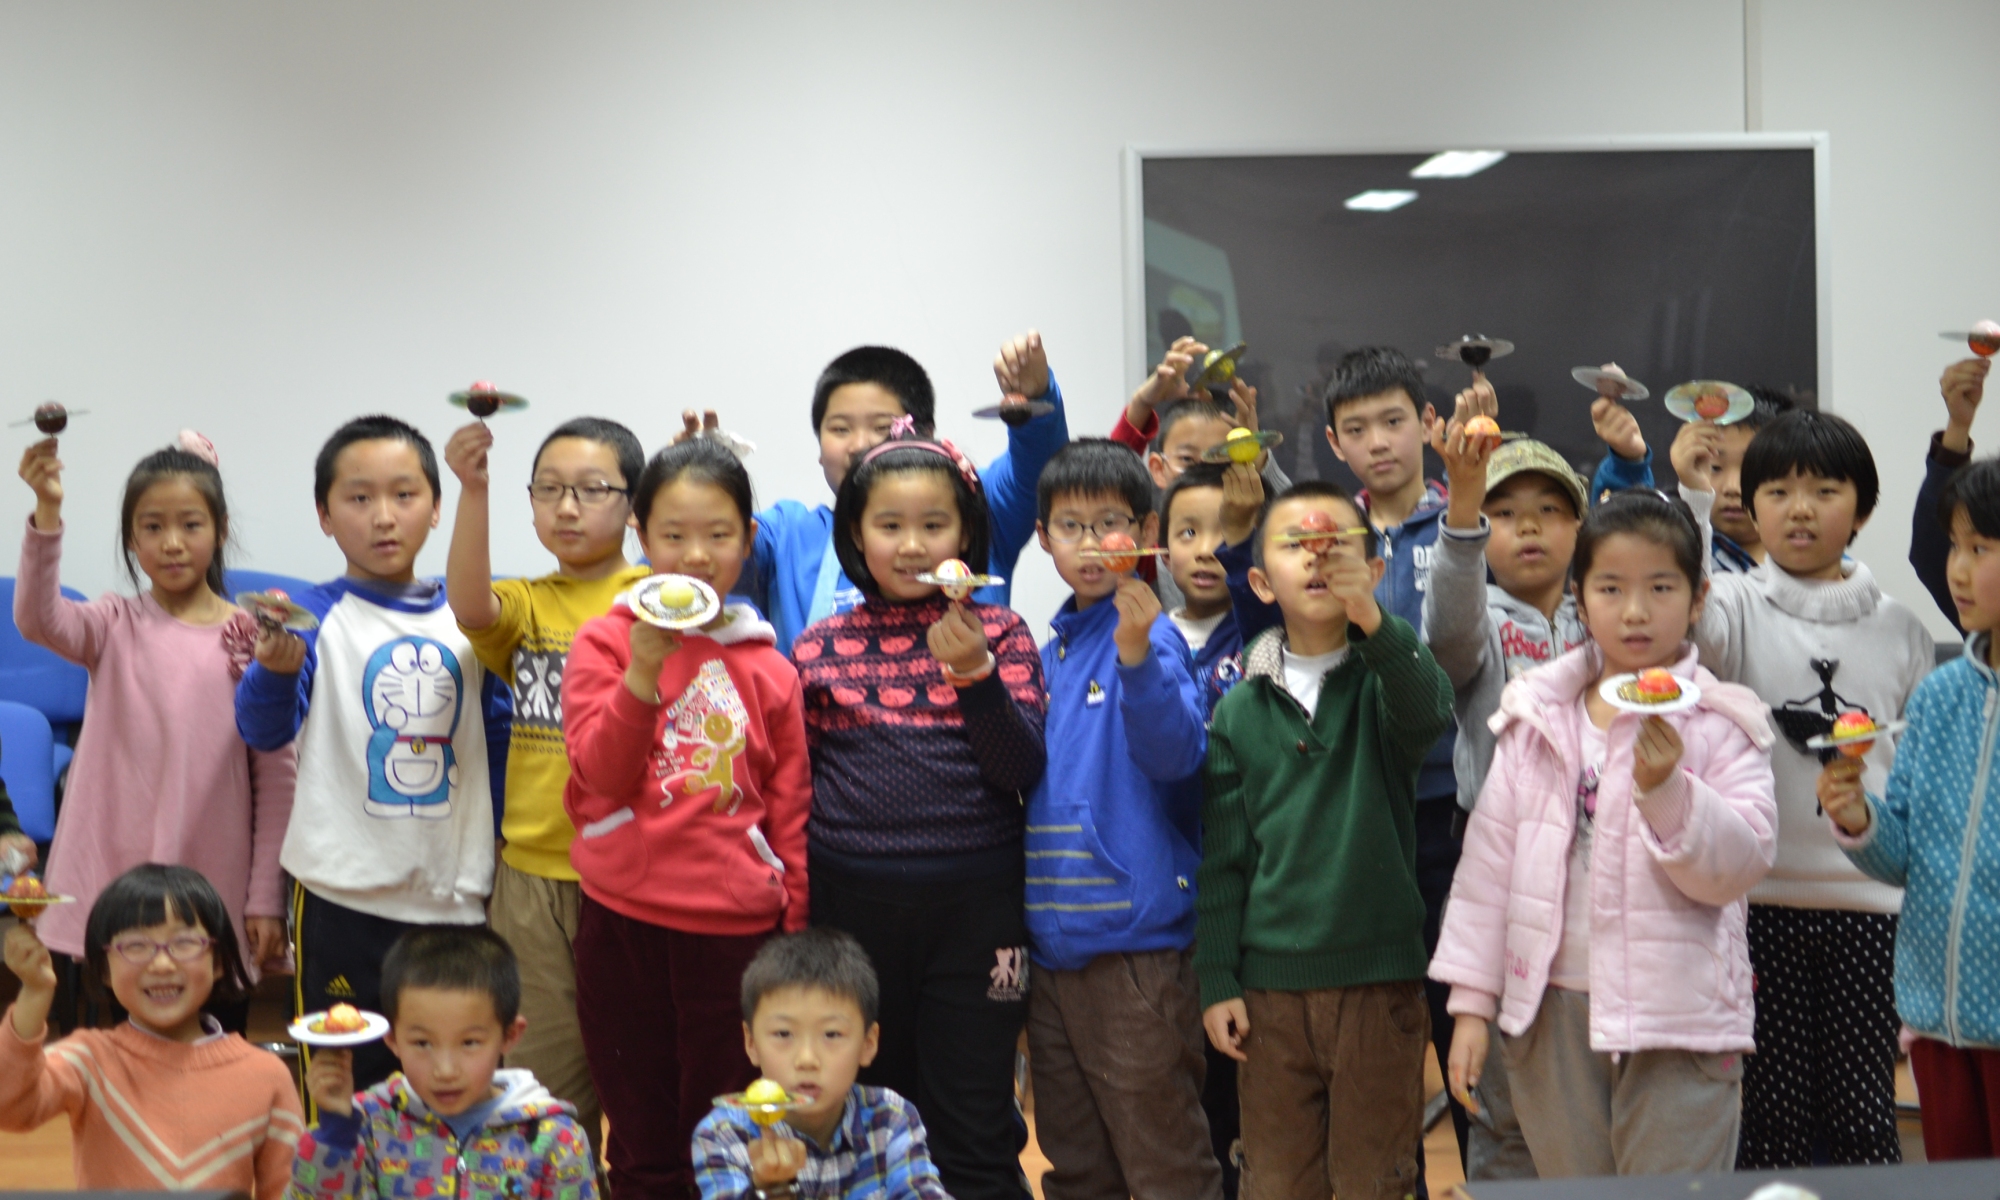 Cerca de 300 niños participaron en la primera edición de las Noche de las Estrellas en China.